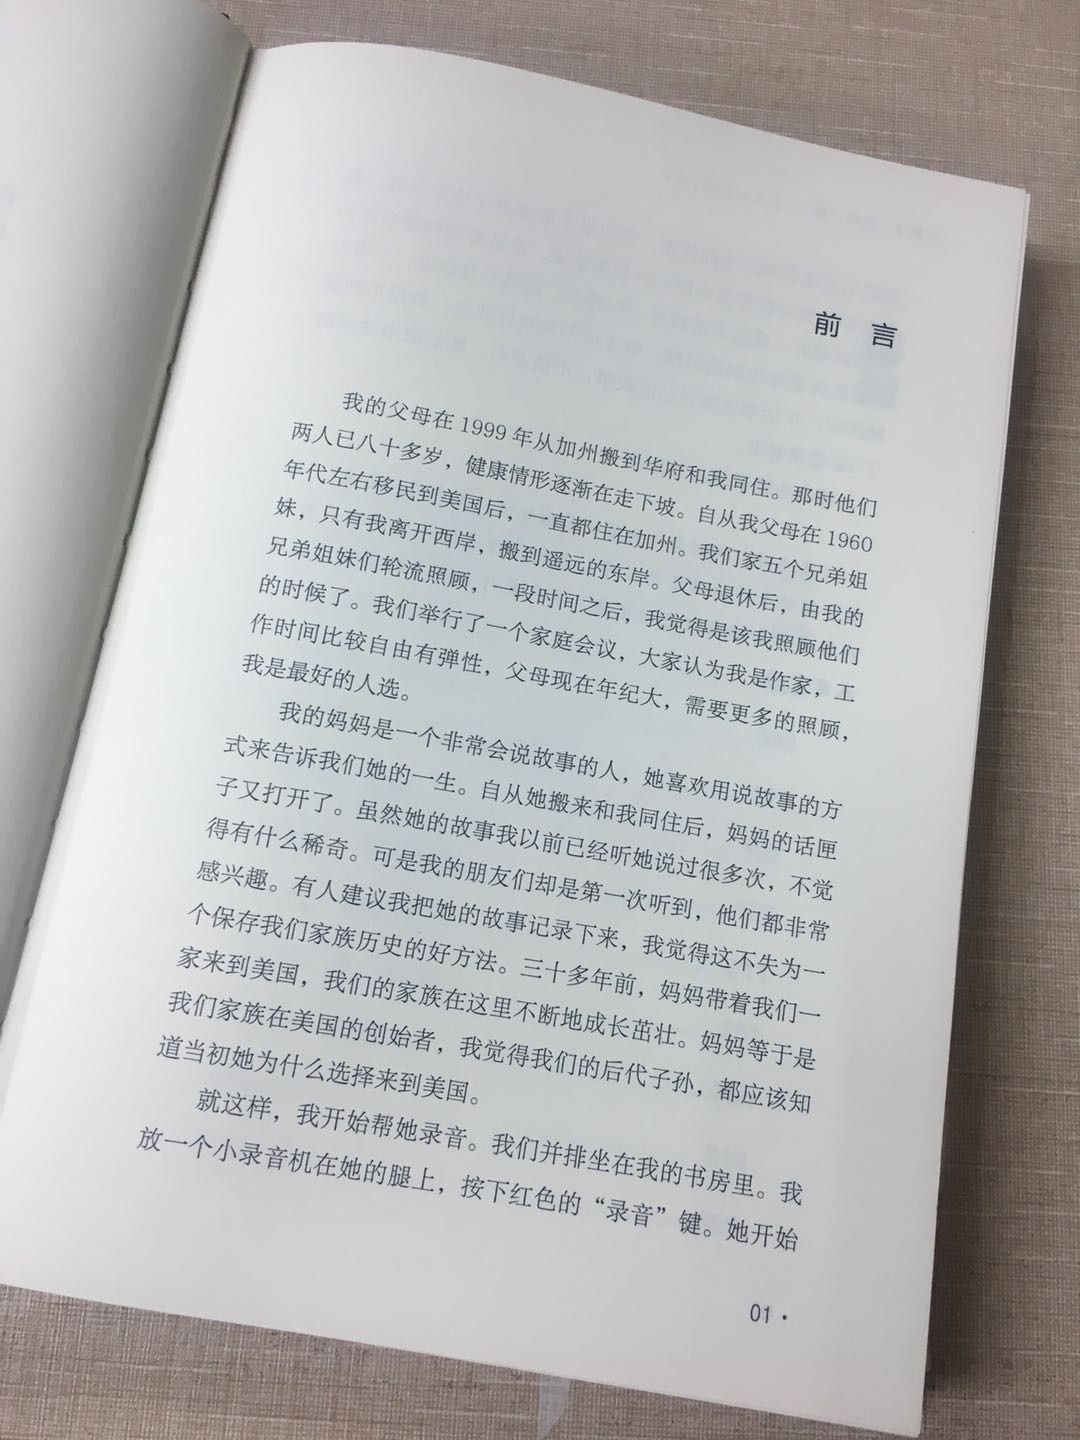 在杨锦麟先生的微博看见本书，第一时间下单，应该是在预售期吧，所以第一时间拿到书，迫不及待的读了。朋友圈看到一个朋友写的评论，先放上来。跟我感受差不多。等我之后写了再补充。这本口述史的作者叫李纯瑛，是王云五三公子王学政的妻子。1944年李纯瑛自香港流亡到重庆，阴差阳错之下认识了王云五，并在几年后成为了他的儿媳妇。在口述中，她非常详尽地回忆了王云五家族在抗战前后自重庆-上海-南京-香港的家庭生活，很多情景可能都属首次披露，让人得以有机会深入了解这位出版家、政治家鲜为人知的私密世界。此外，李纯瑛还回忆了她自香港成长、家变、读书、患病、逃难、恋爱、结婚、生育子女等，前后半个世纪的生活，对早期的香港社会、马泰华人商圈、战时流亡、现代女性自我觉醒等都有全景式的记述，相比王云五家族的秘闻来，这是书中最重要的篇章。从中看到的是一个新女性的独立觉醒、一个妻子的辛酸忍让、一个母亲的坚毅勇敢，还有一个大时代的变幻与莫测。有对家族史感兴趣的朋友，推荐这本书。读过一定会有收获。